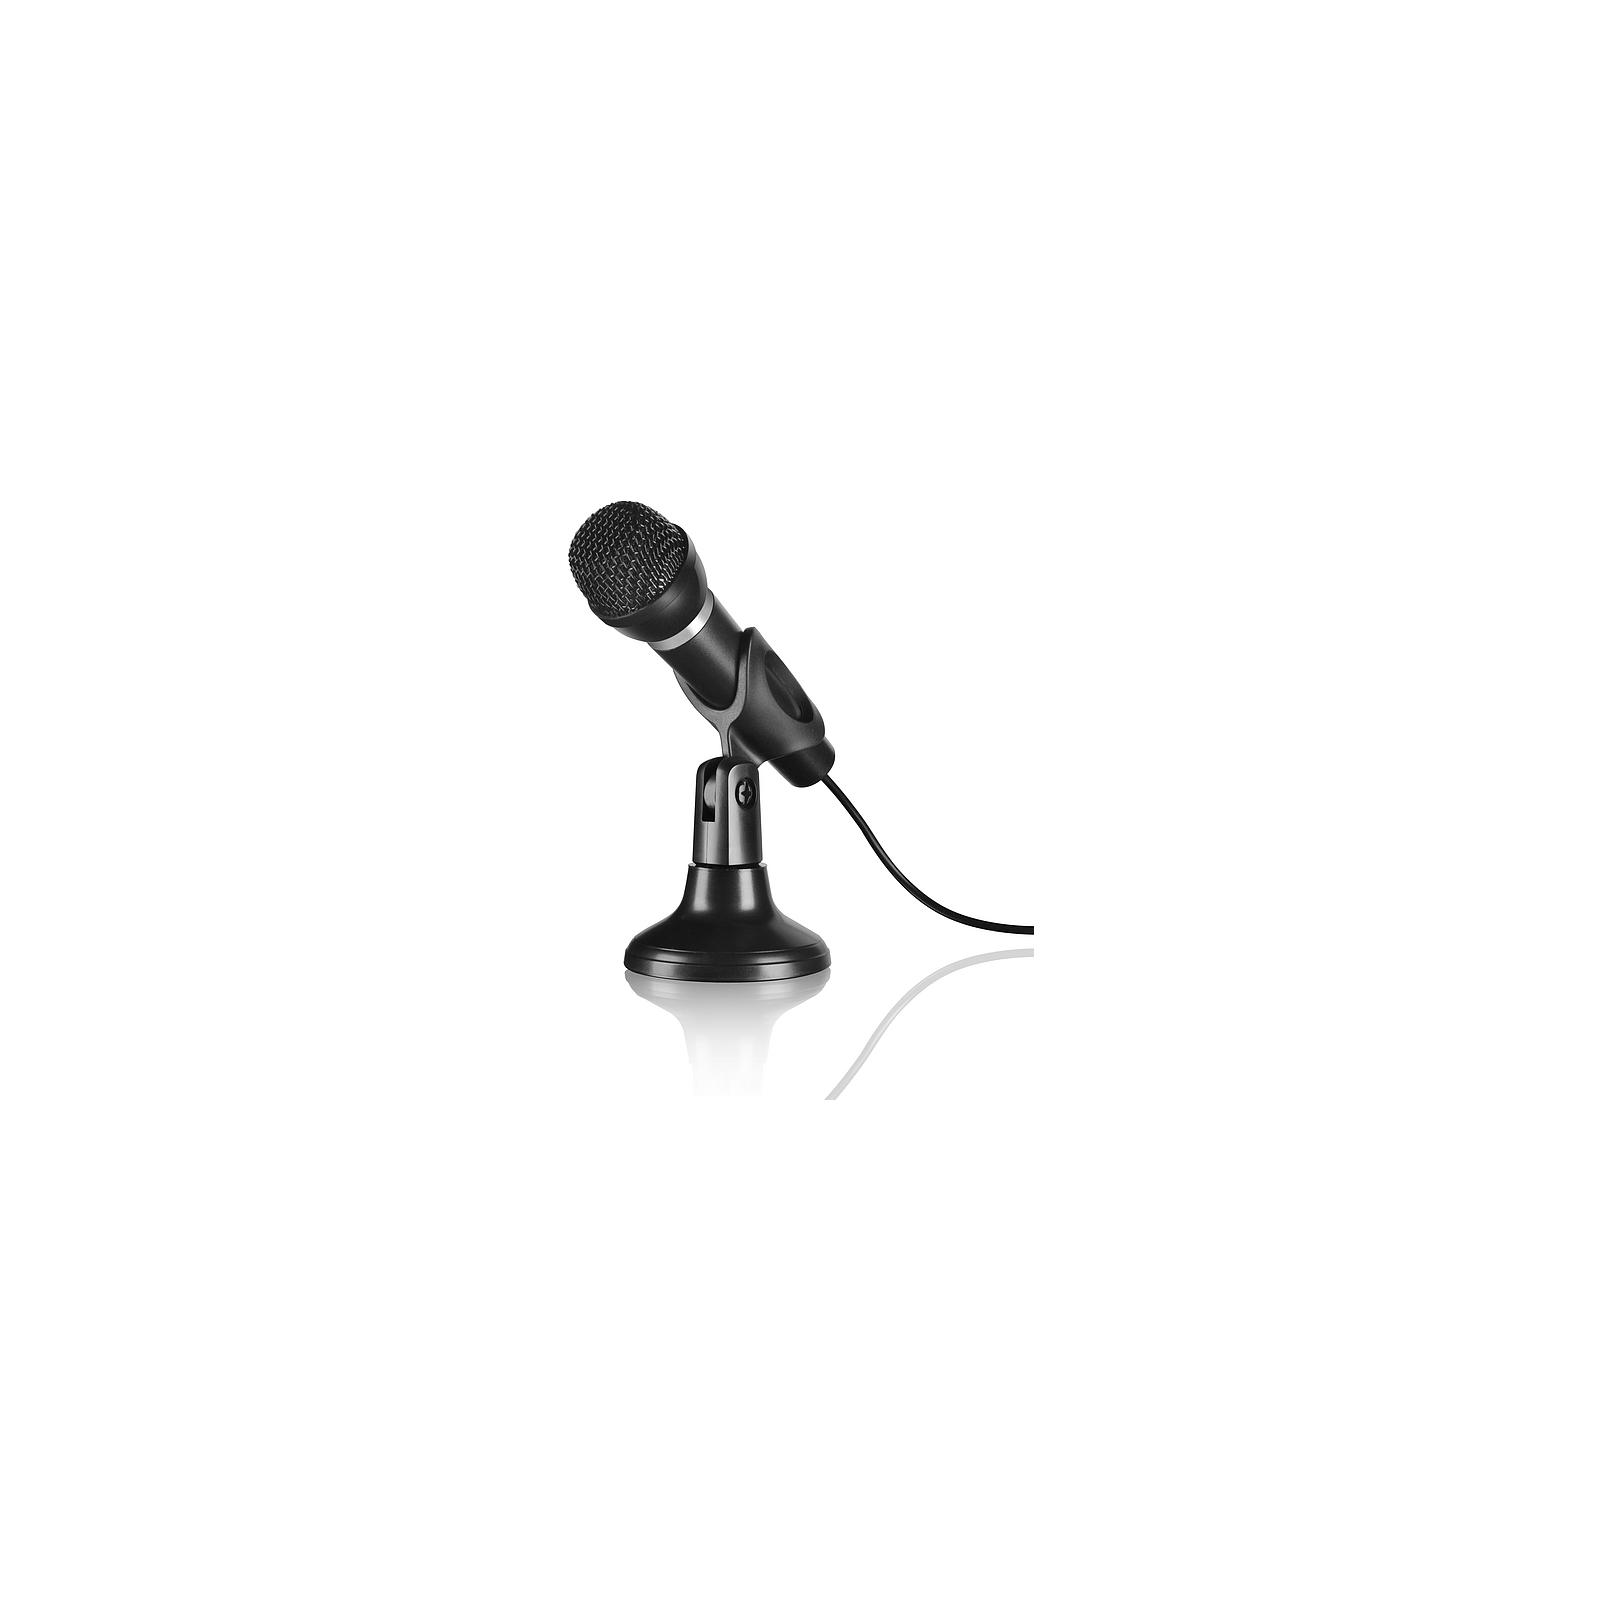 Микрофон Speedlink CAPO Desk and Hand Microphone Black (SL-8703-BK)